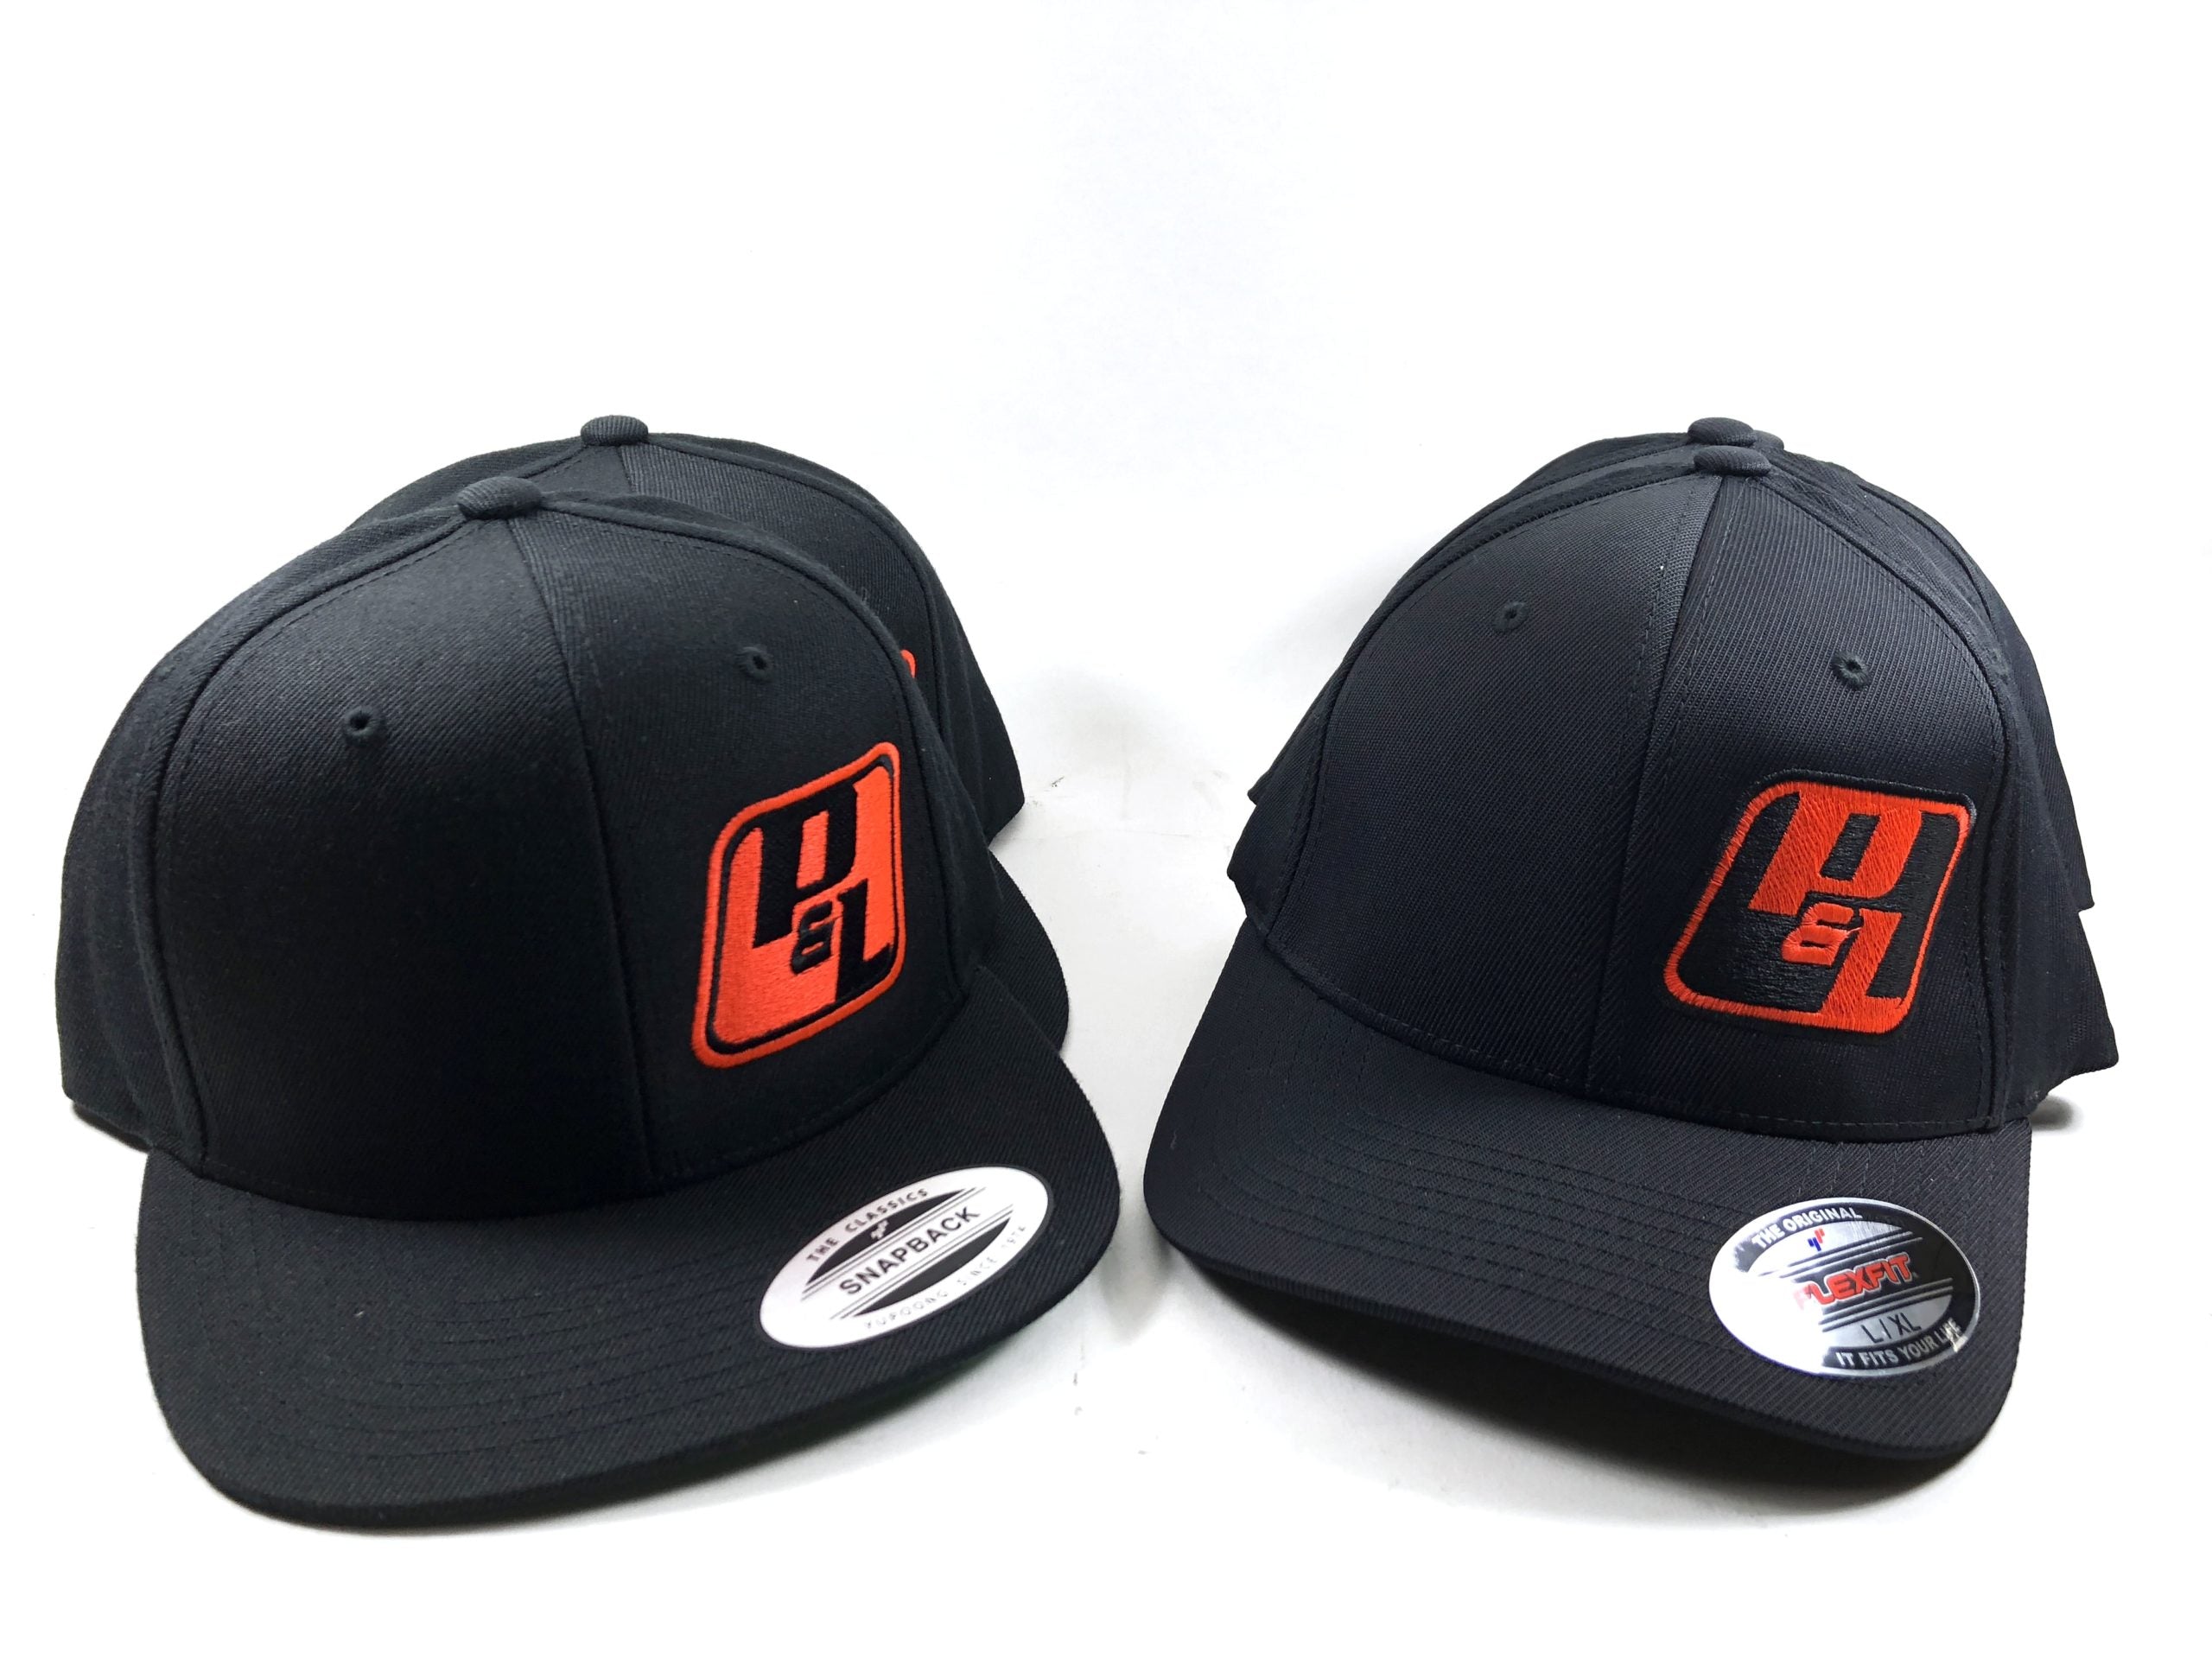 P&L Motorsports Official Hat